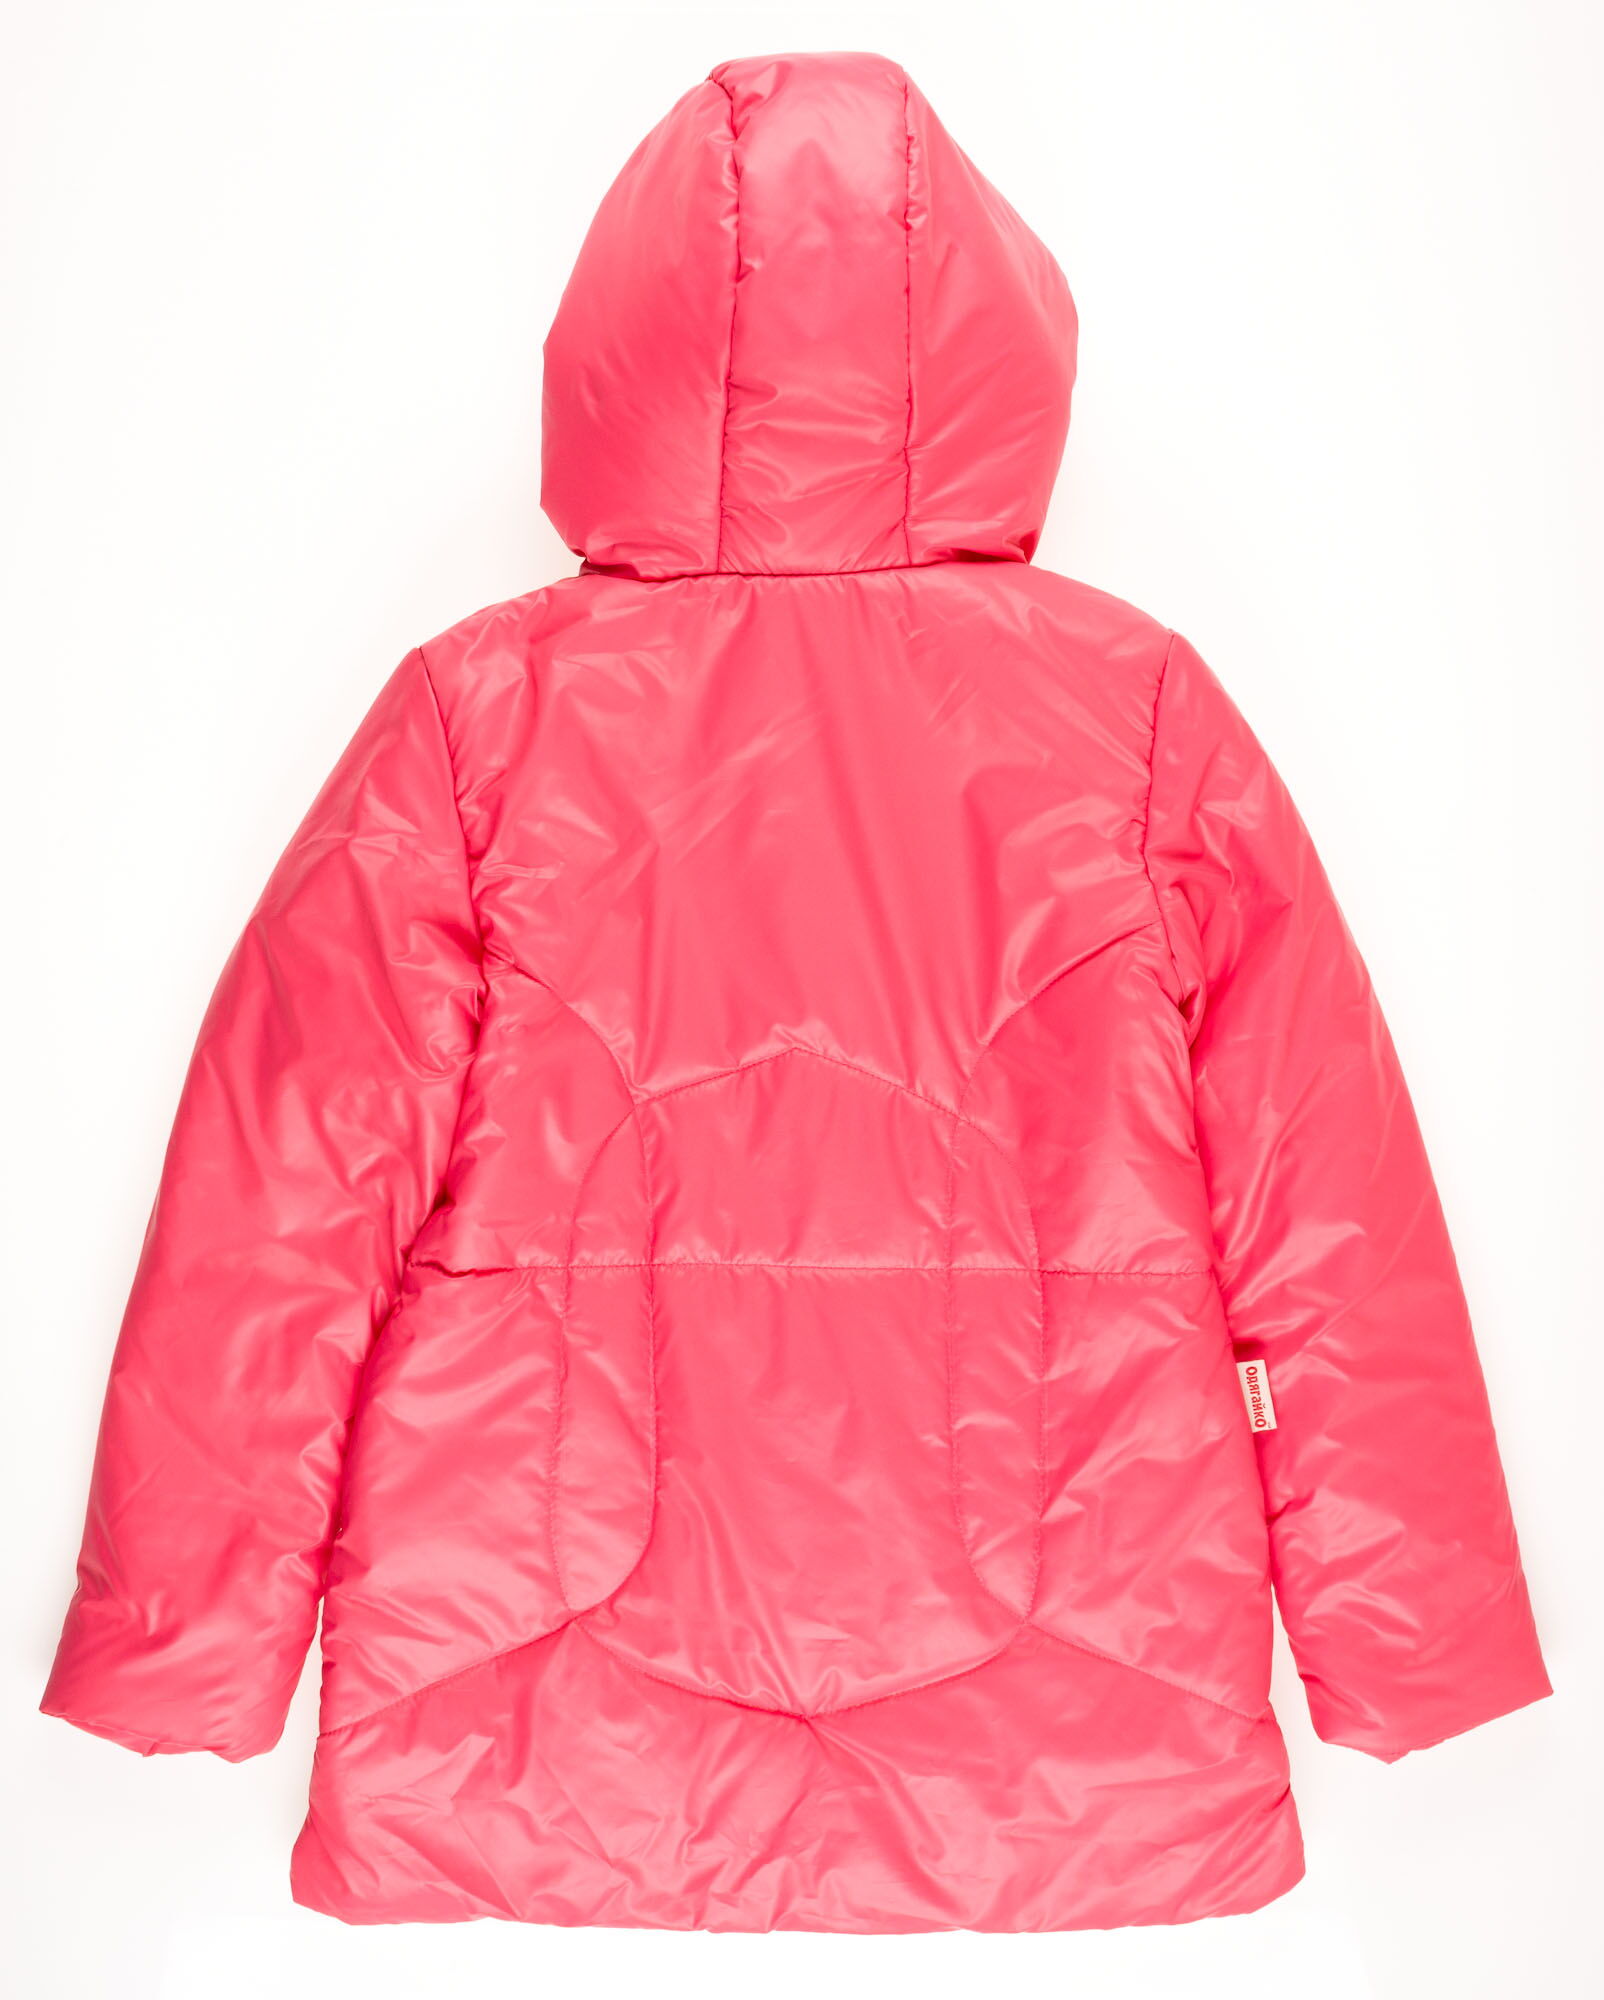 Куртка удлиненная для девочки ОДЯГАЙКО коралловая 22042 - размеры